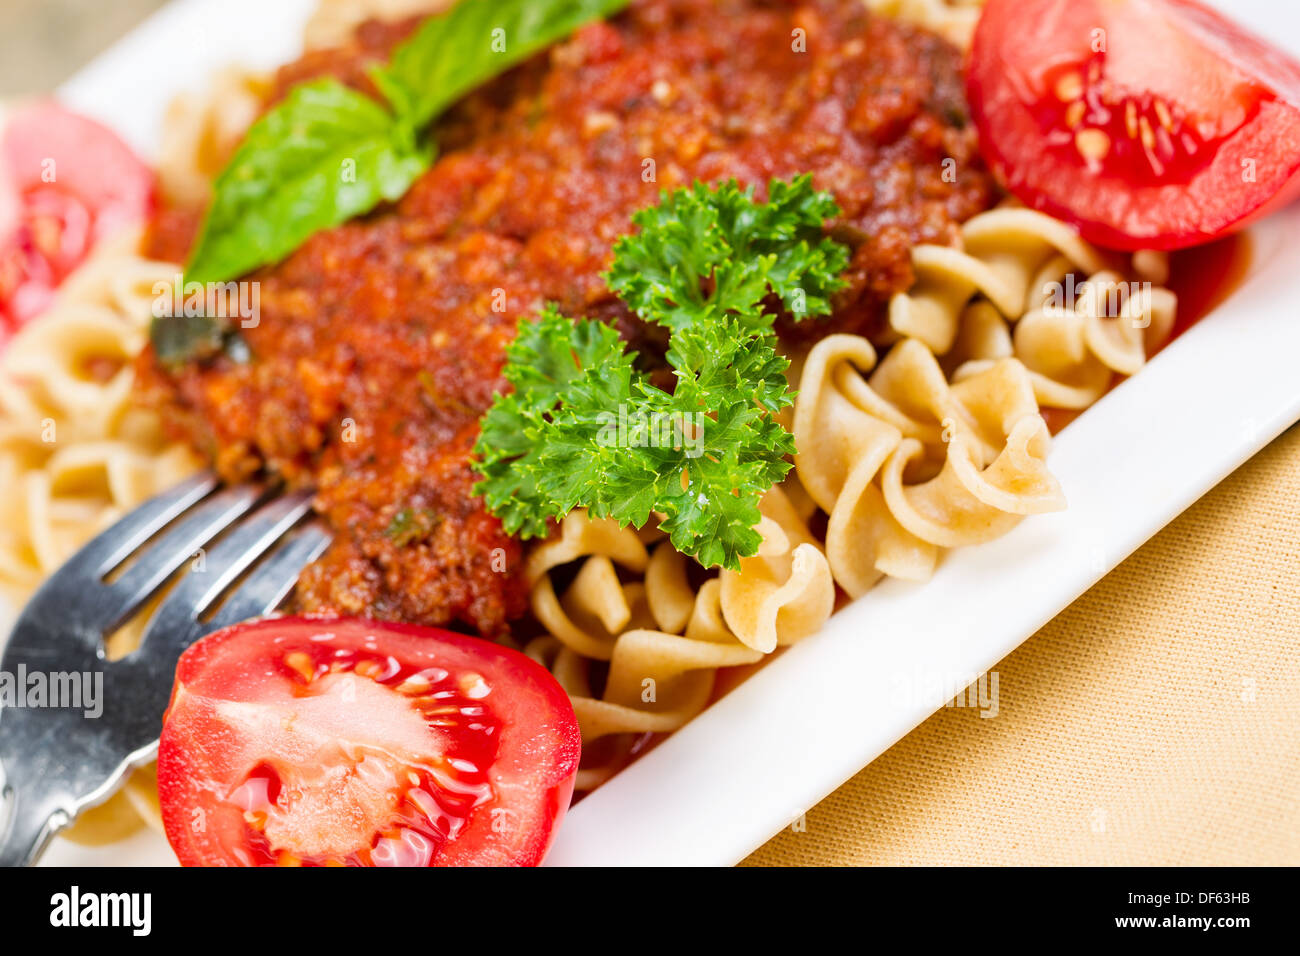 Closeup foto orizzontale di pasta fresca, forcella, salsa di pomodoro, i pomodori, il prezzemolo, il basilico in una piastra bianca Foto Stock